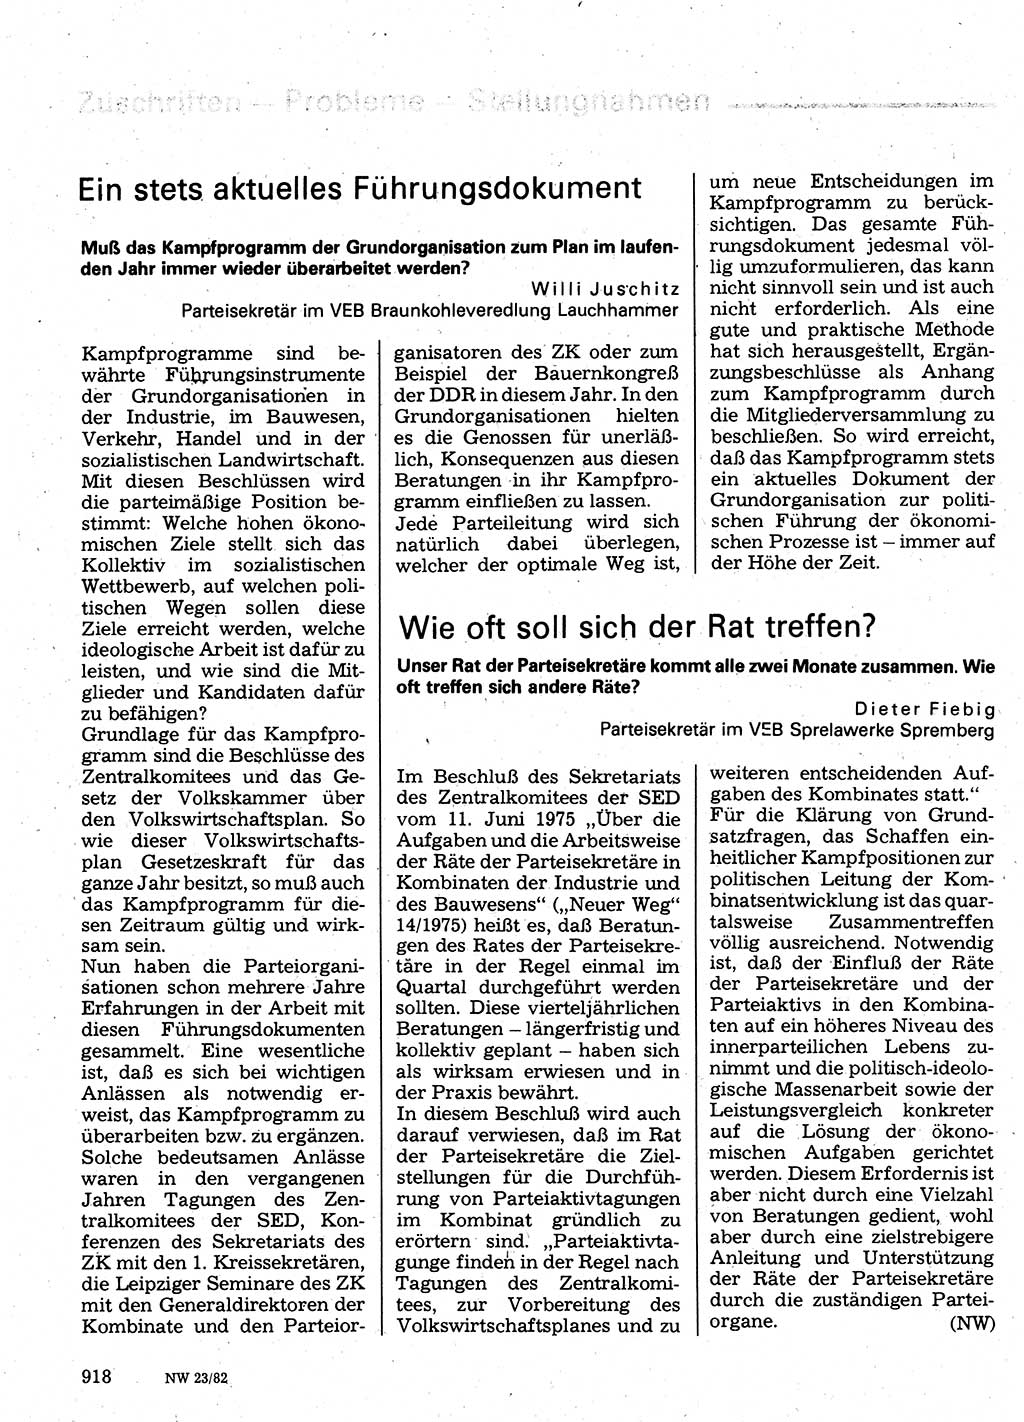 Neuer Weg (NW), Organ des Zentralkomitees (ZK) der SED (Sozialistische Einheitspartei Deutschlands) für Fragen des Parteilebens, 37. Jahrgang [Deutsche Demokratische Republik (DDR)] 1982, Seite 918 (NW ZK SED DDR 1982, S. 918)